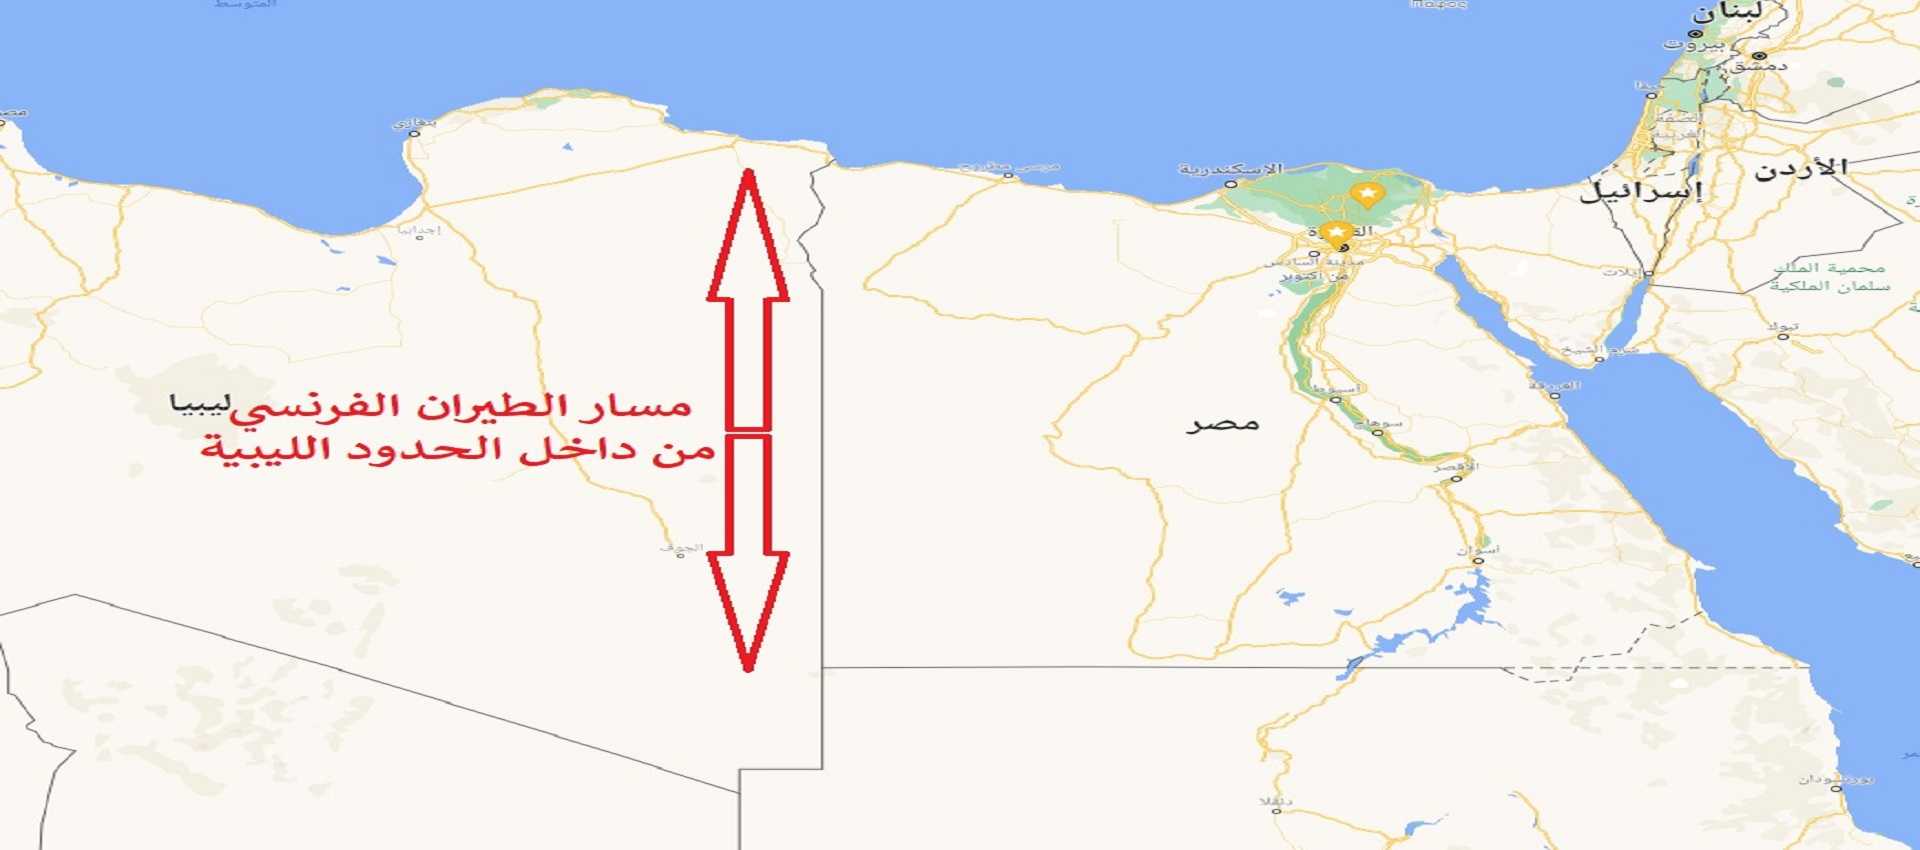 حقيقة العملية “سيرلي” وشائعات تصفية فرنسا مواطنين مصريين في الصحراء الغربية